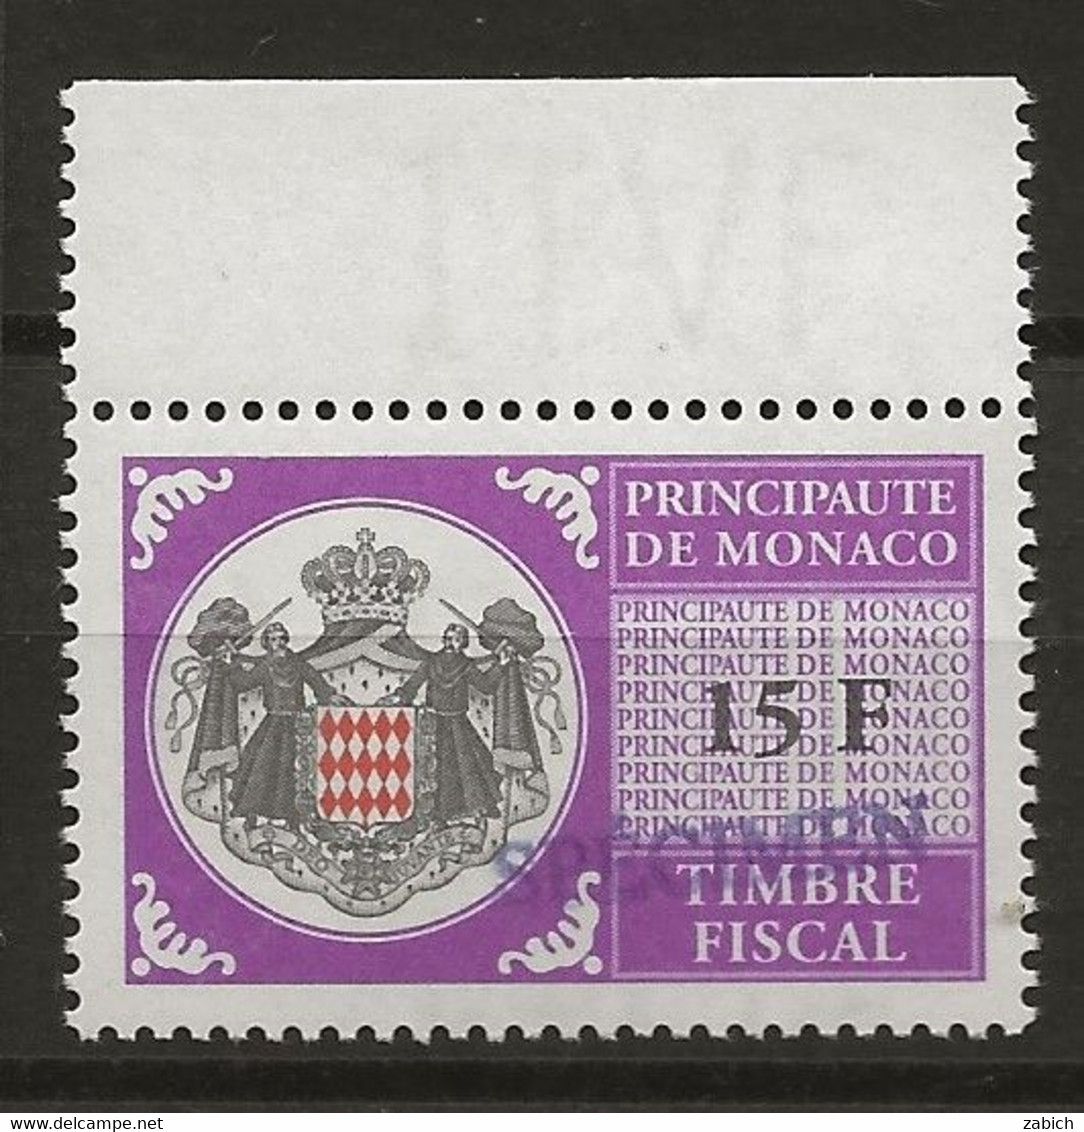 FISCAUX DE MONACO SERIE UNIFIEE N° 103 15 F Violet Rare Surchargé Spécimen Neuf Gomme Mnh (**) - Fiscaux